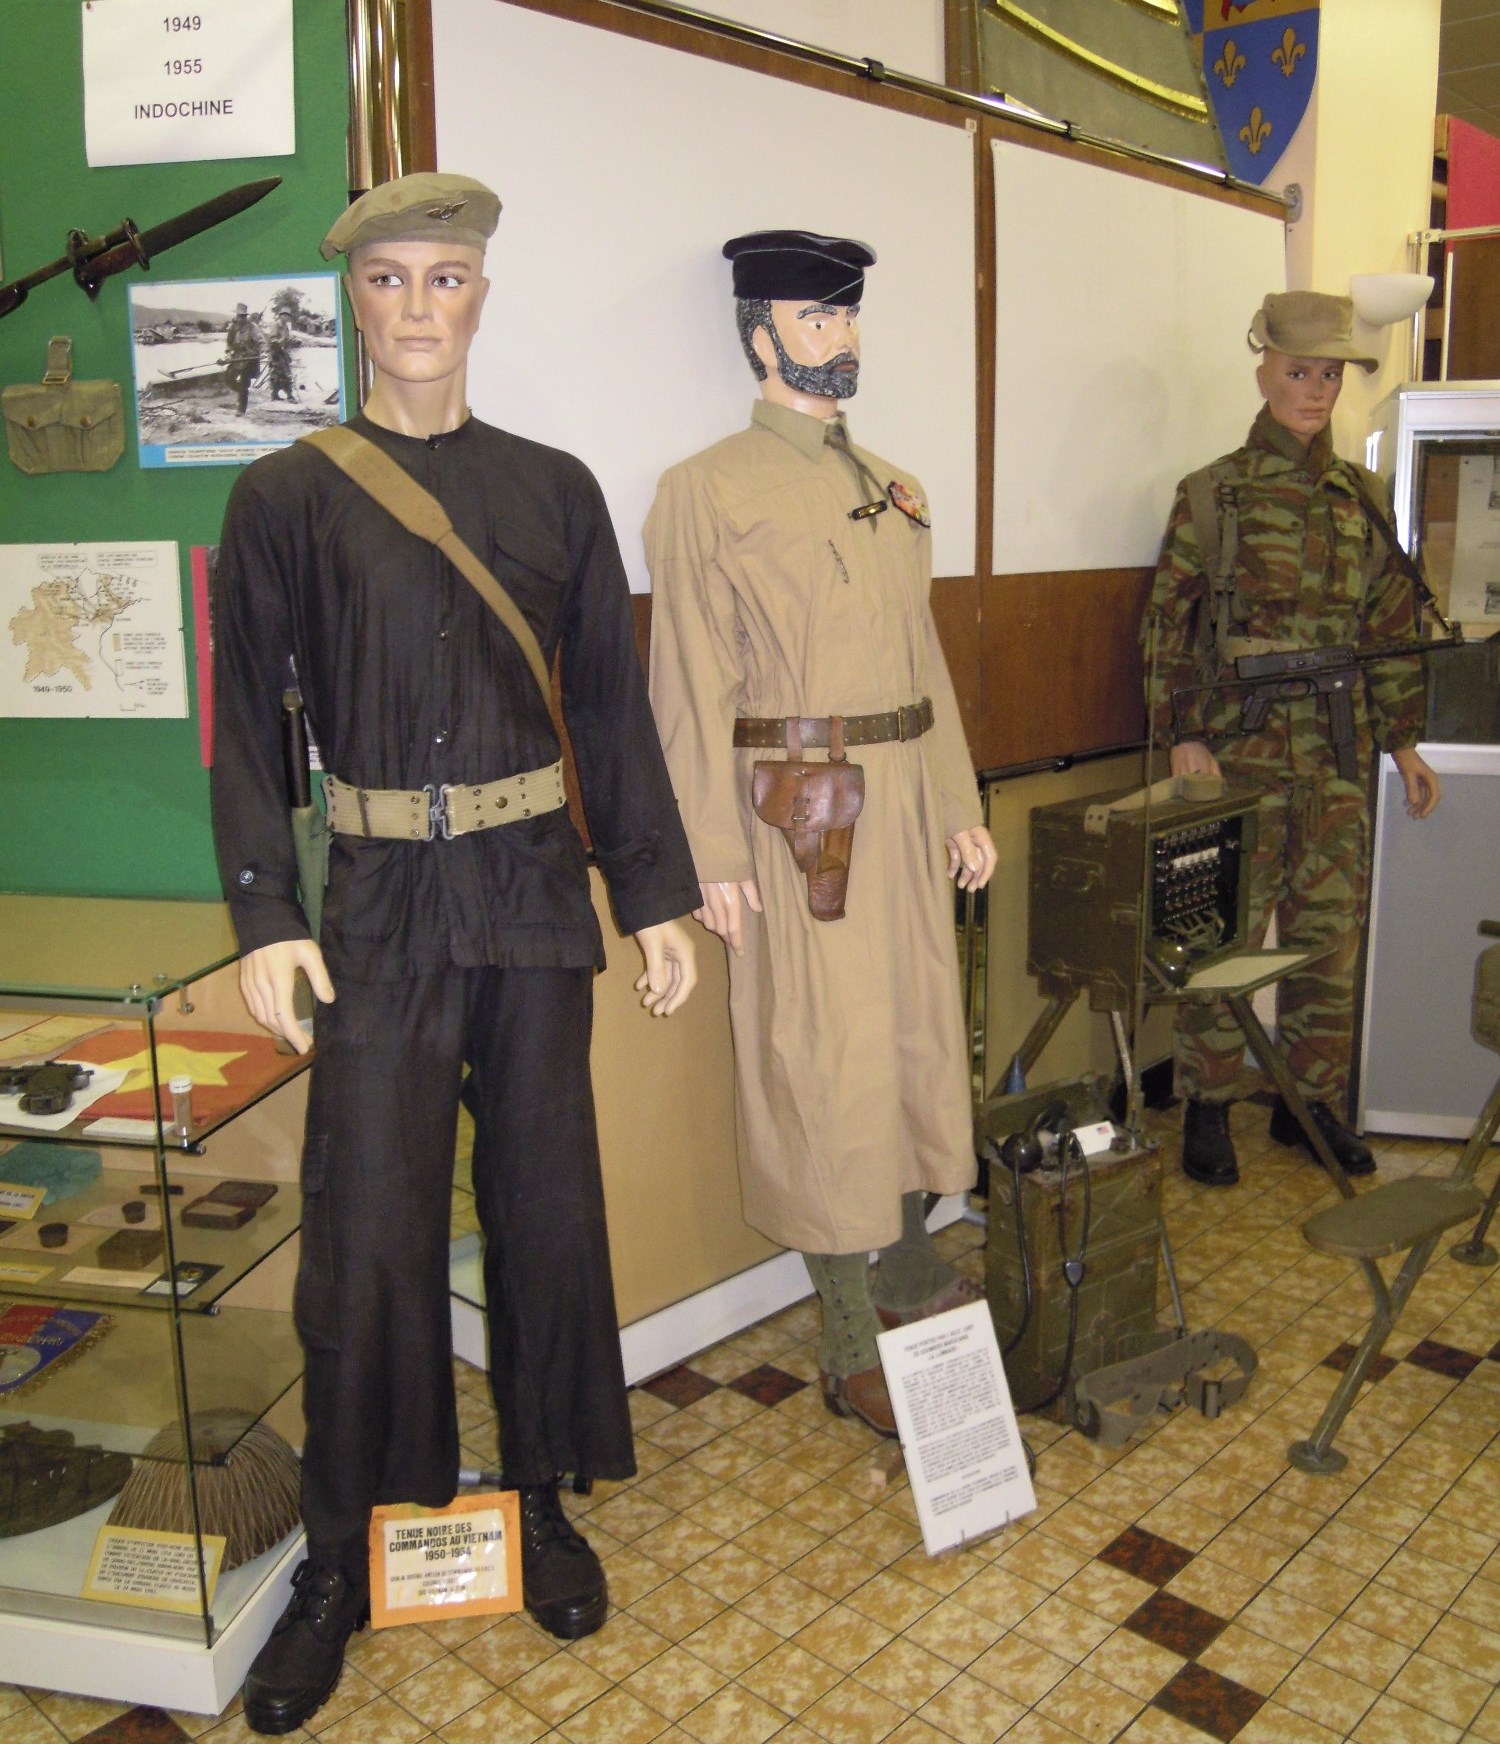 Crédit photo : Musée militaire de Lyon